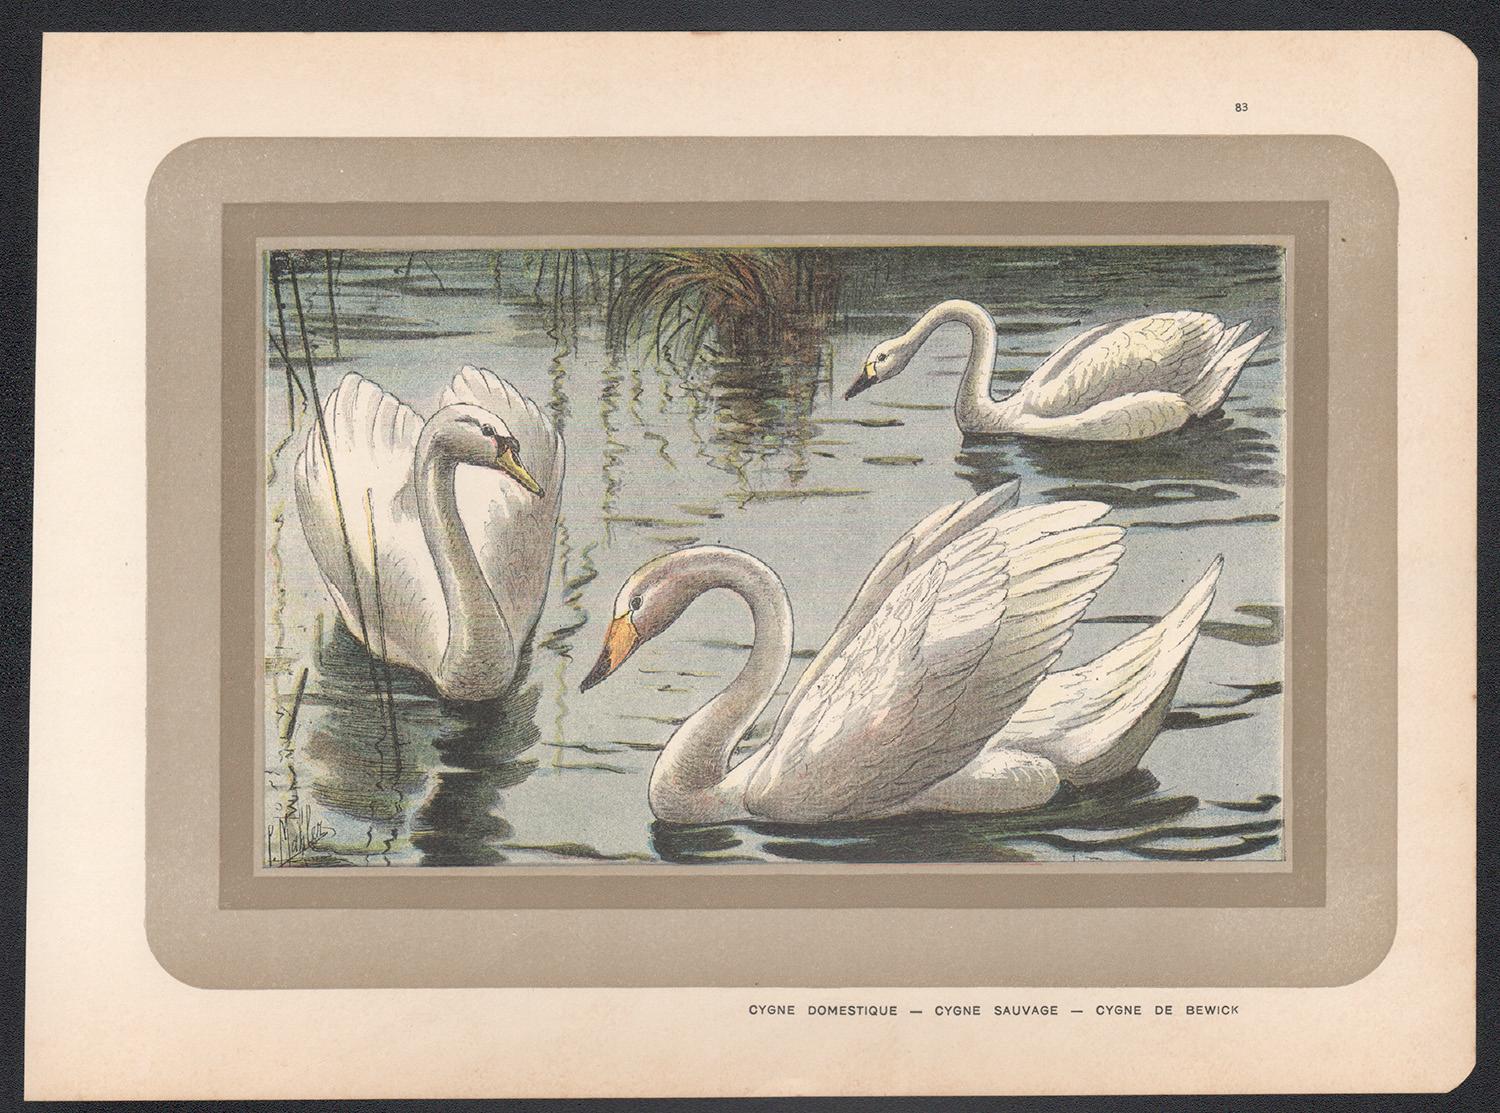 Swan, impression chromolithographie d'illustration d'un cygne de l'histoire naturelle française et ancienne - Print de Unknown